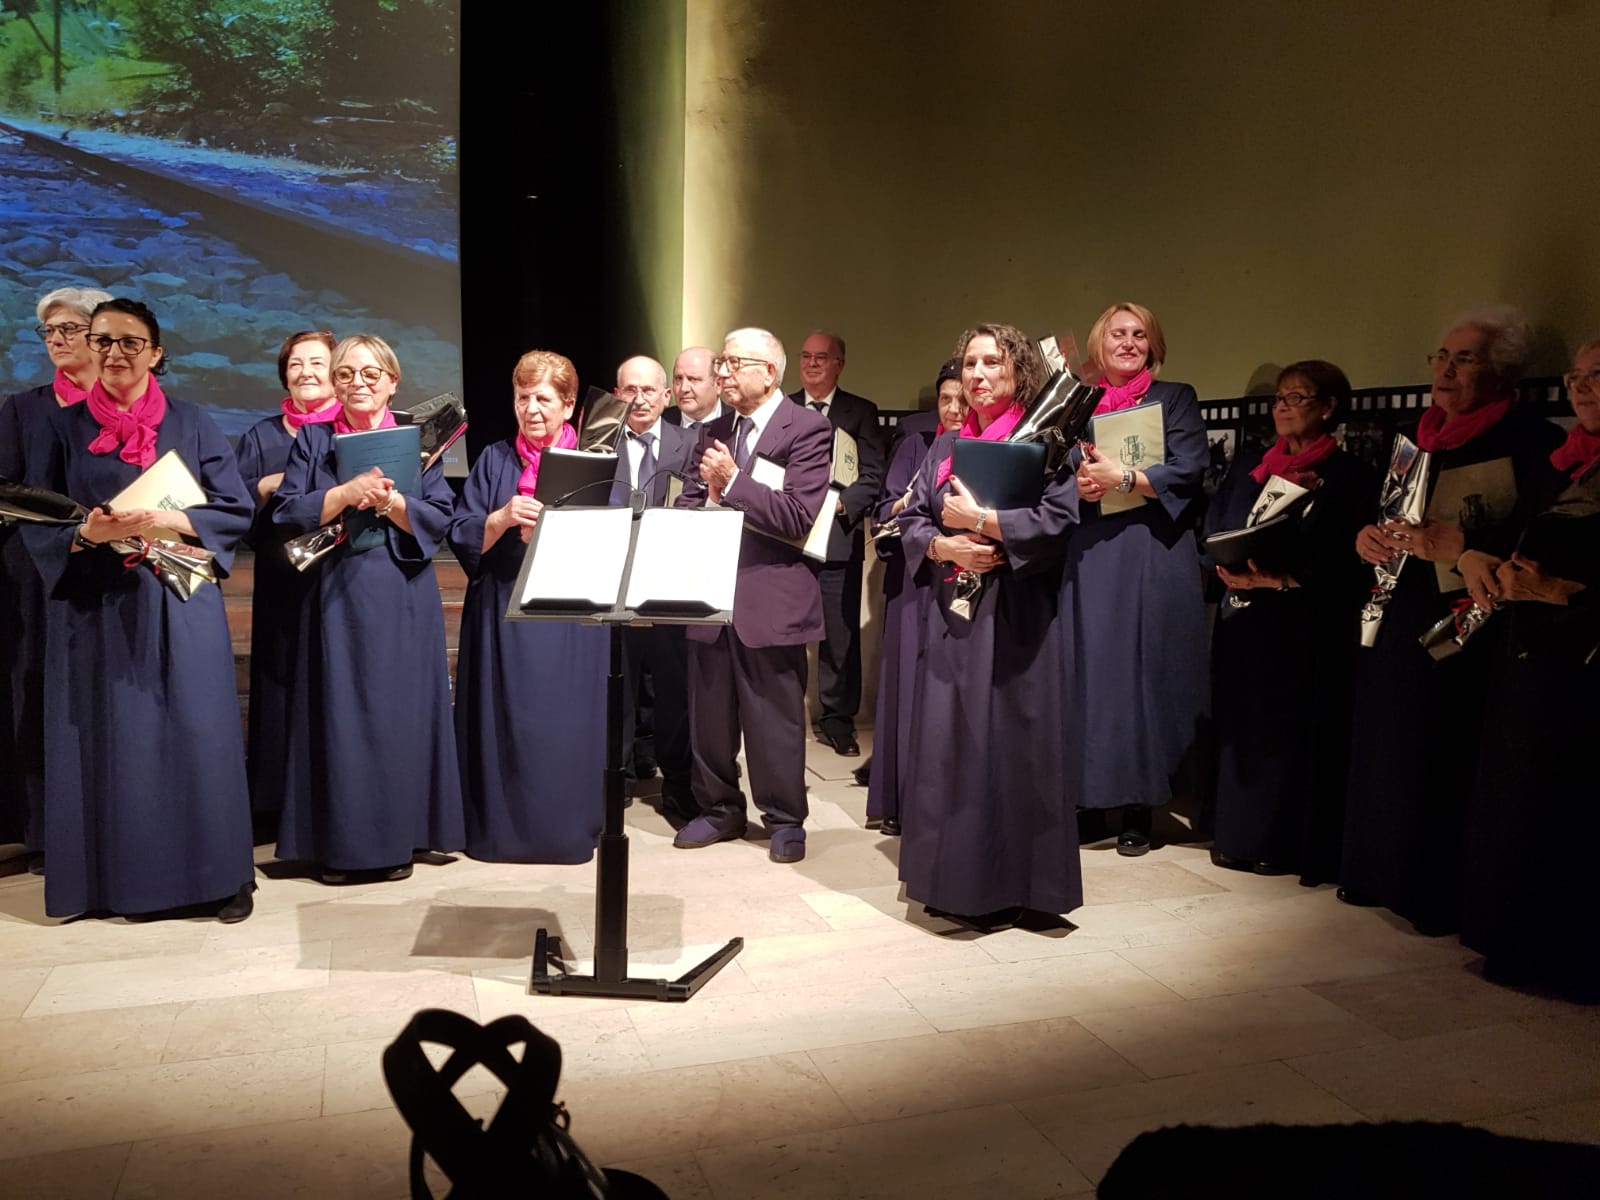 Immagini : Concerto di Natale al Teatro Adriano